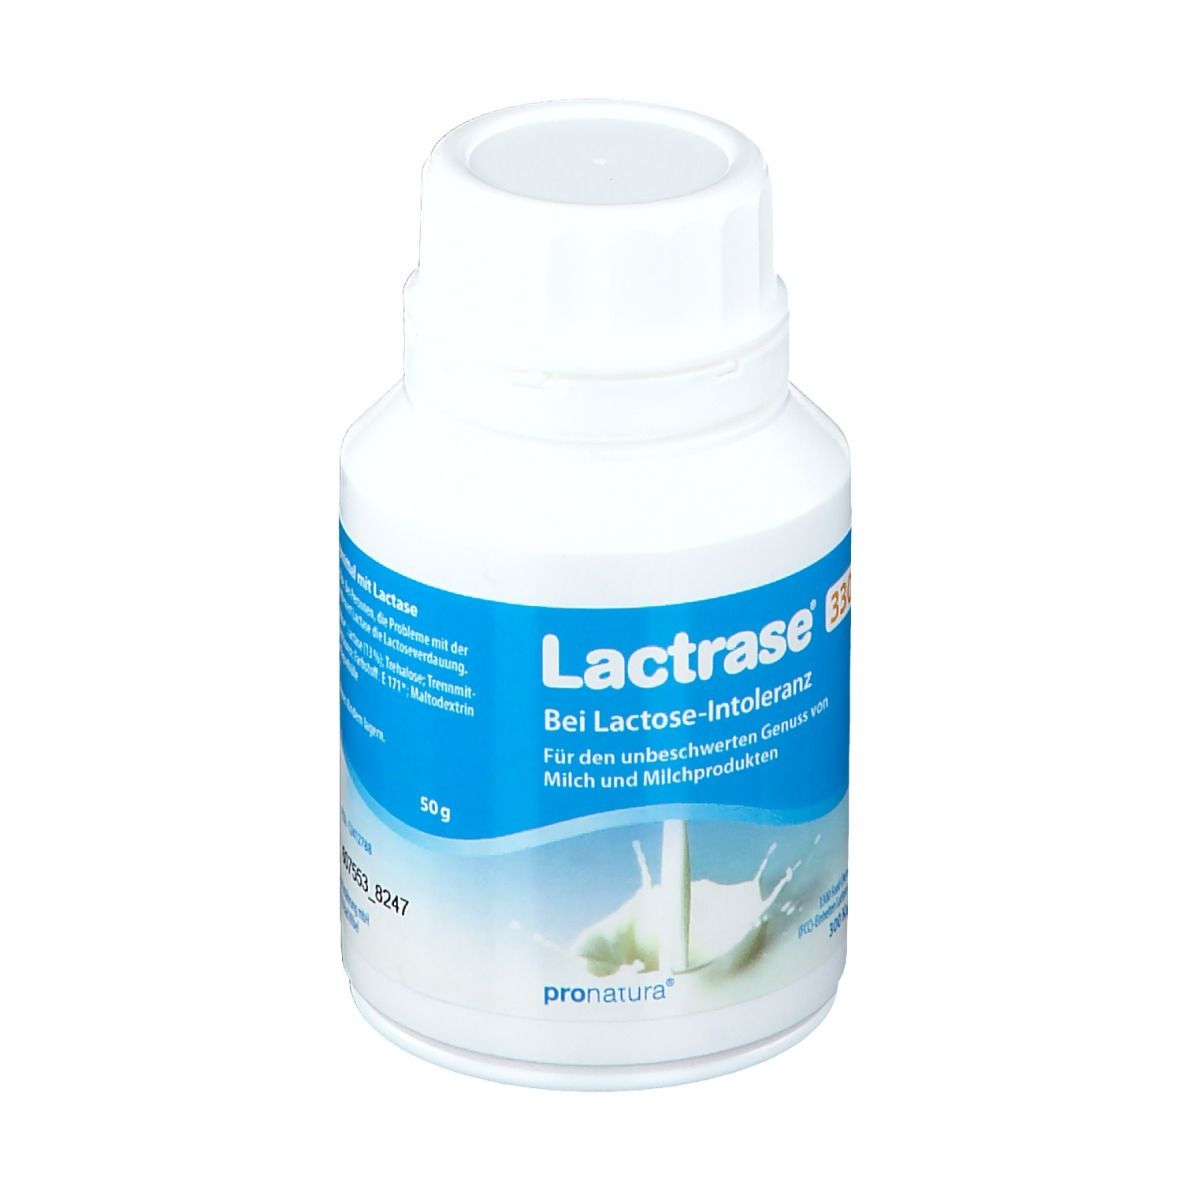 Lactrase® 3.300 FCC Kapseln